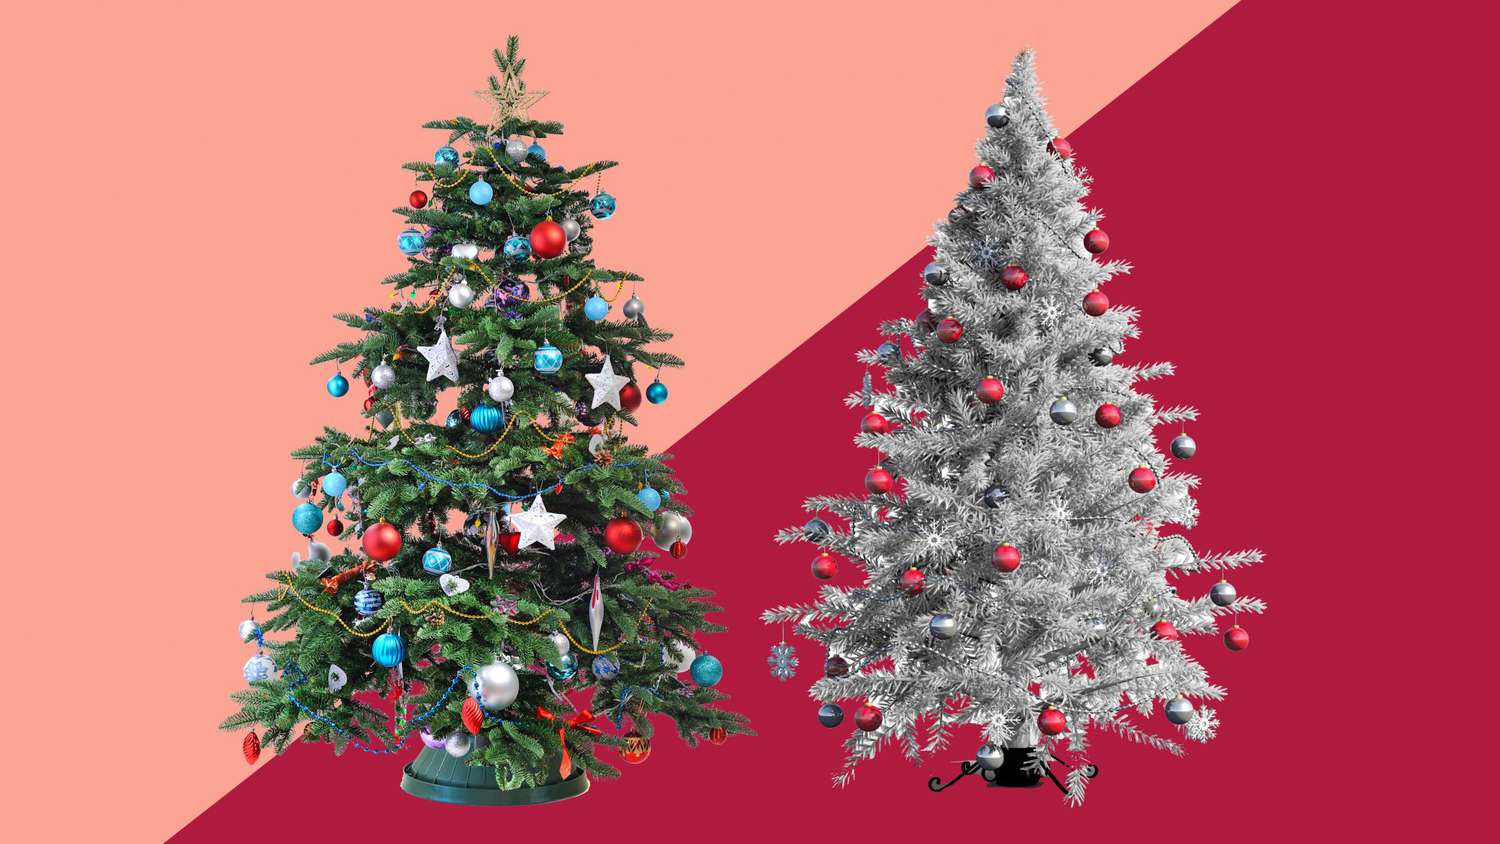 real Christmas tree vs. fake Christmas tree